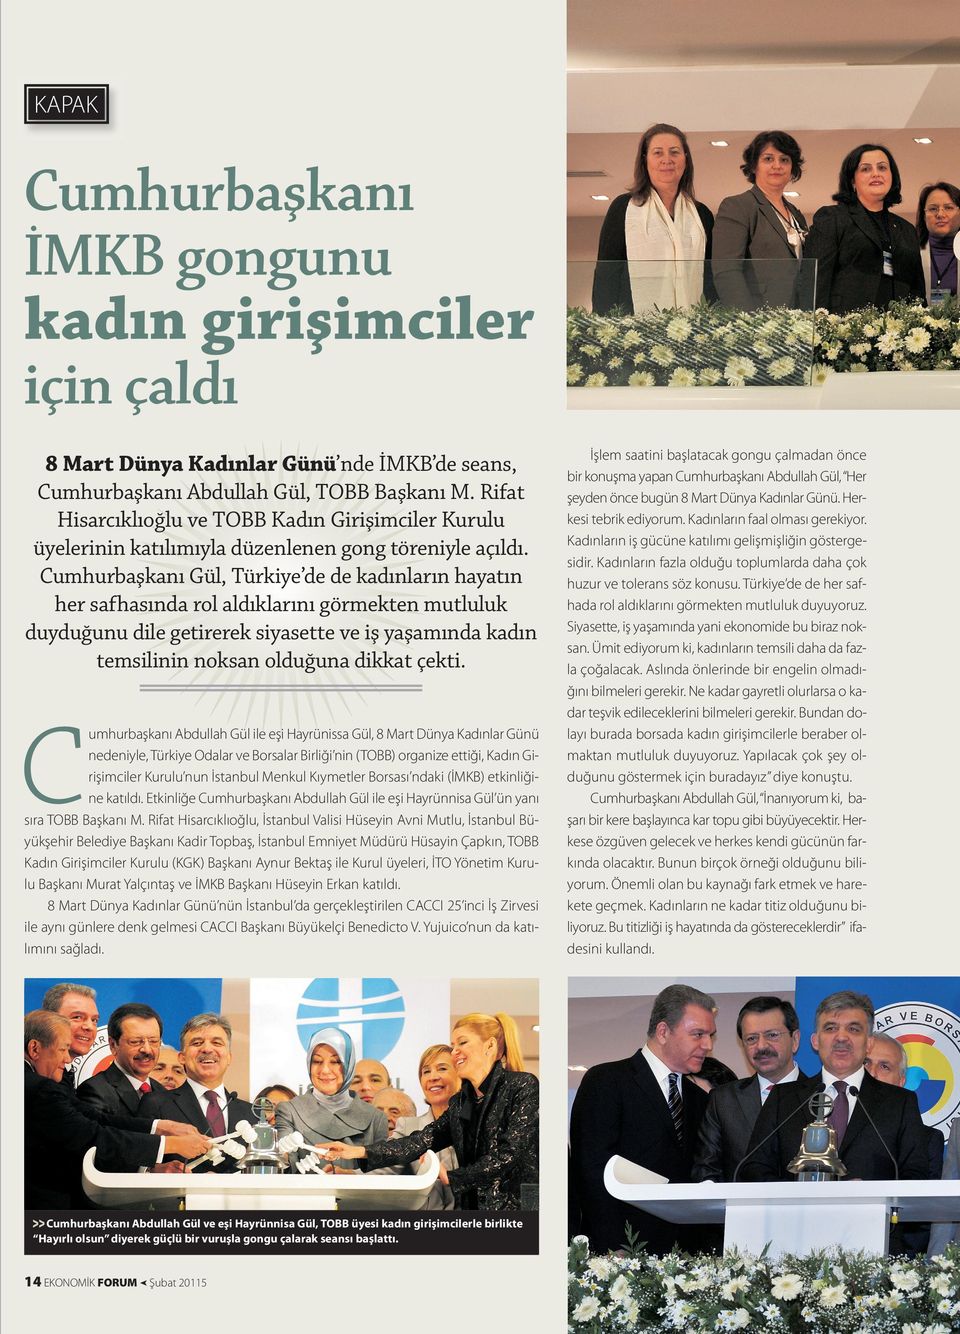 Cumhurbaşkanı Gül, Türkiye de de kadınların hayatın her safhasında rol aldıklarını görmekten mutluluk duyduğunu dile getirerek siyasette ve iş yaşamında kadın temsilinin noksan olduğuna dikkat çekti.